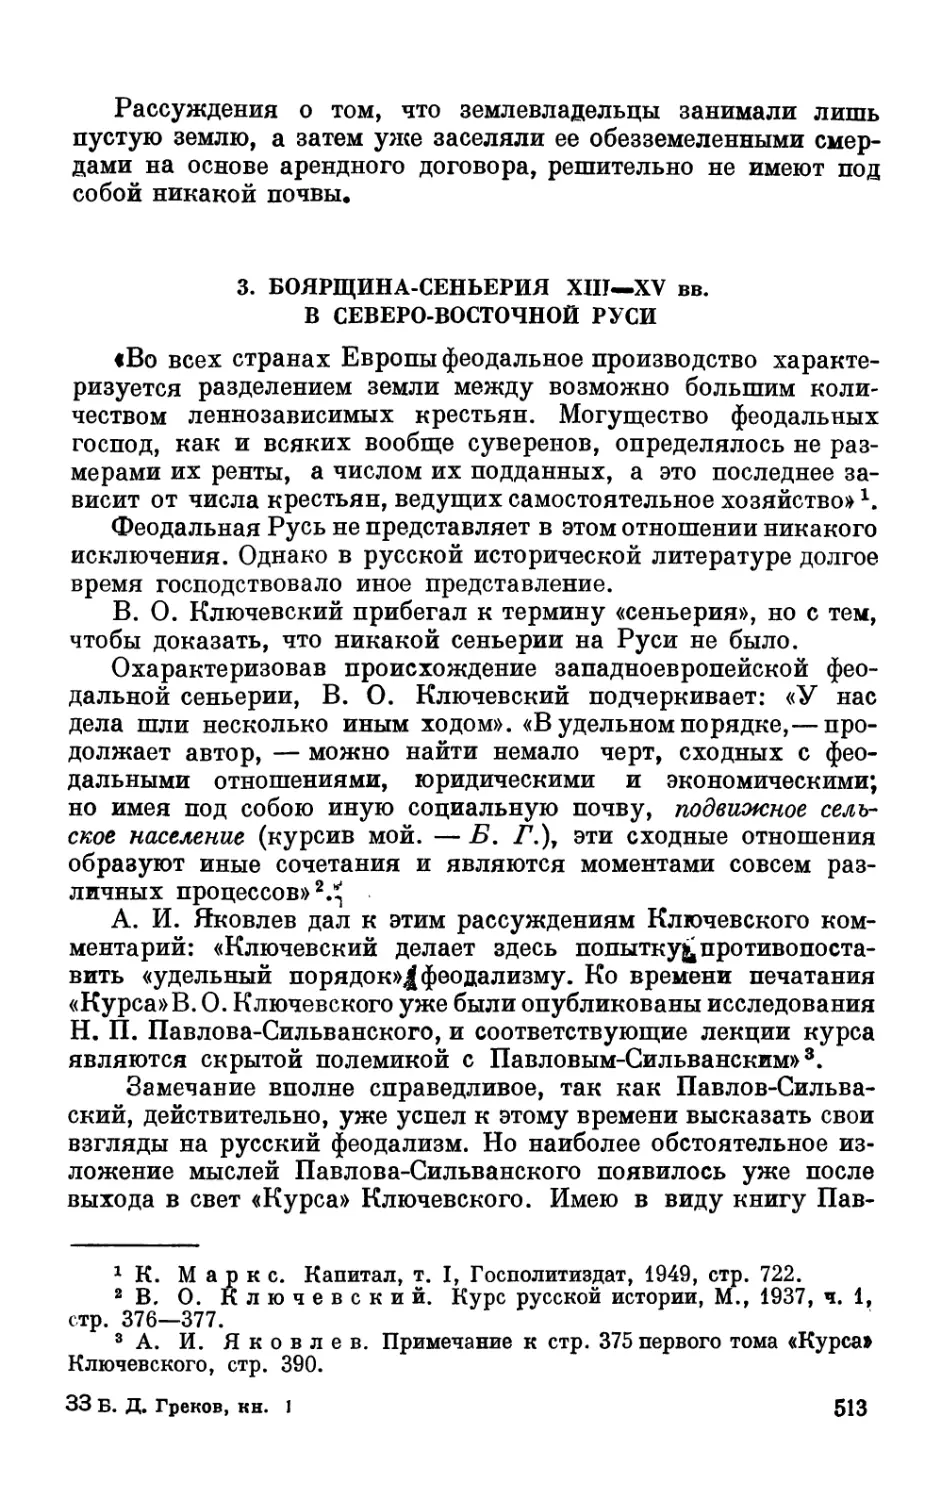 3. Боярщина-сеньерия XIII—XV вв. в северо-восточной Руси